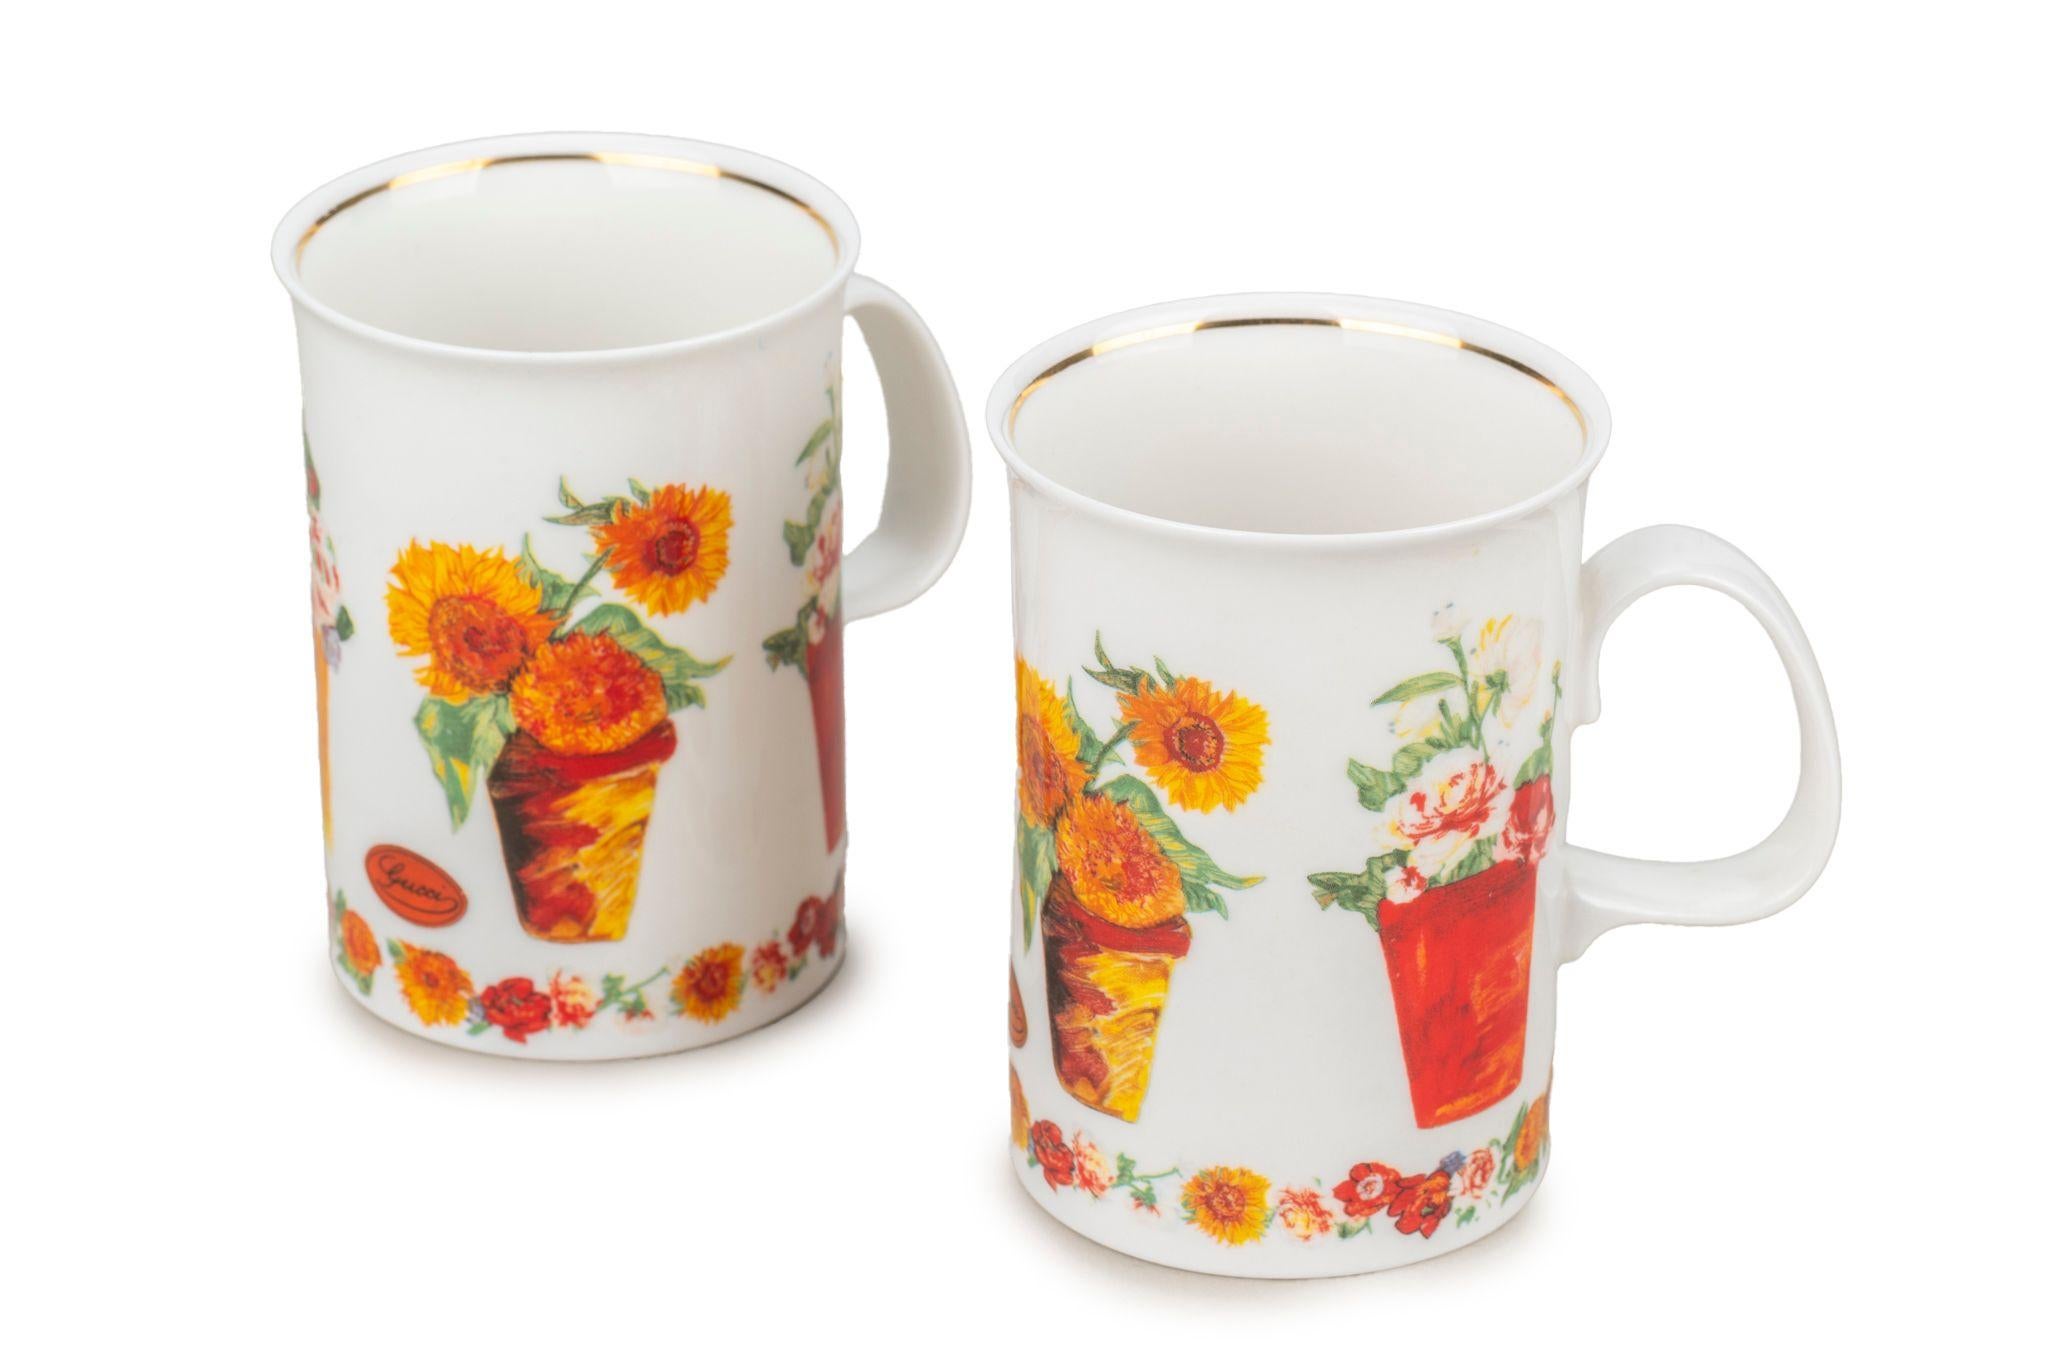 Gucci Satz von 2 Porzellan Blumenvasen Teetassen, weiß, rot, gelb. Ausgezeichneter Zustand.